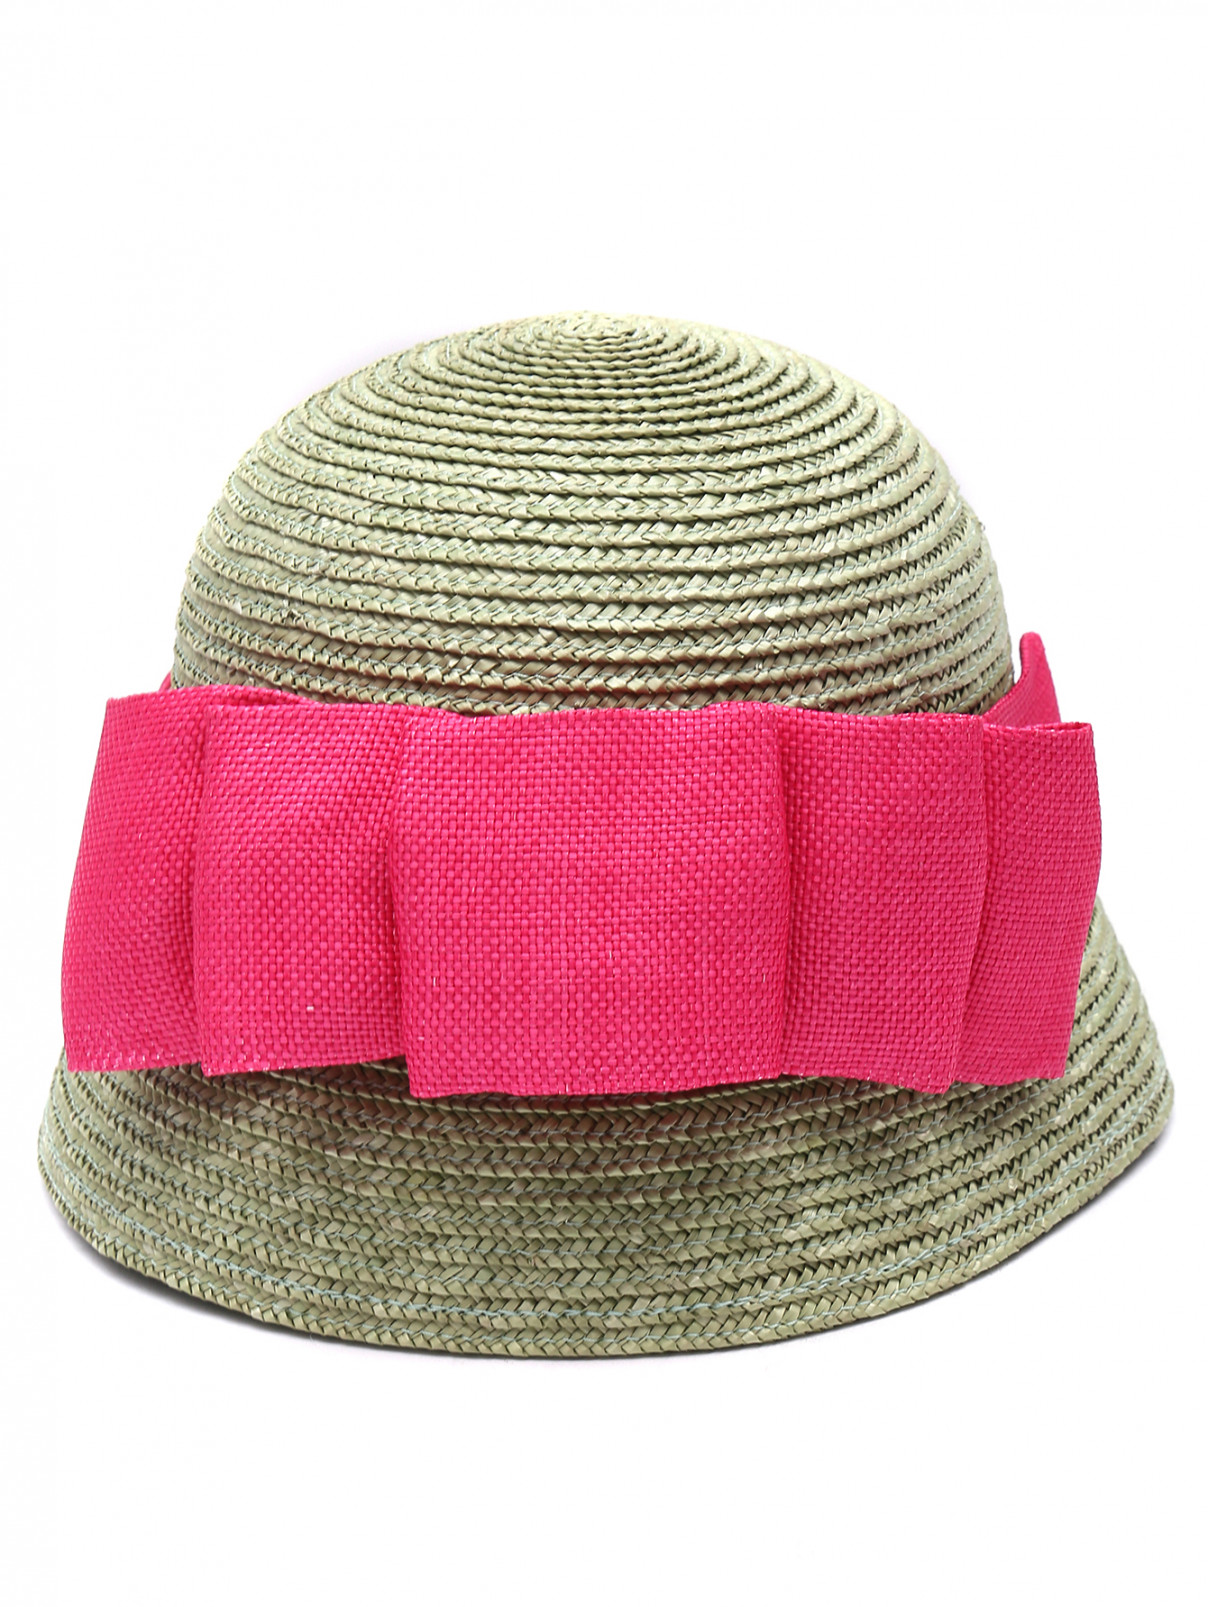 Шляпа из соломы с бантом MiMiSol  –  Обтравка1  – Цвет:  Зеленый